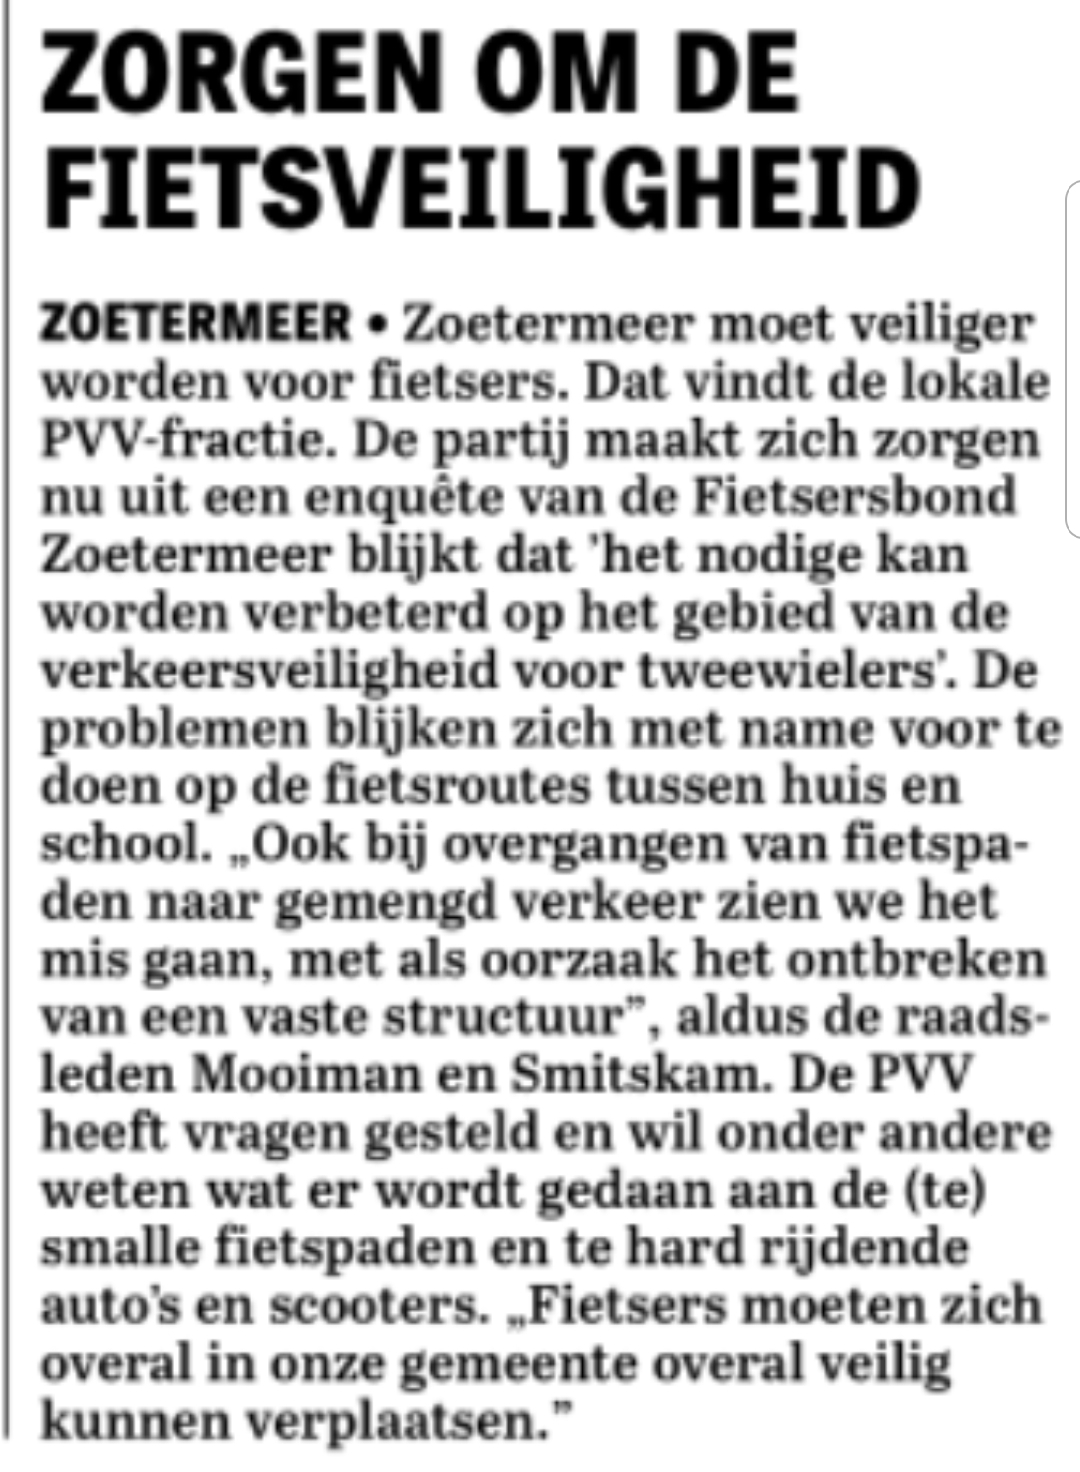 Zorgen_om_de_Fietsveiligheid_PVV_Zoetermeer.jpg